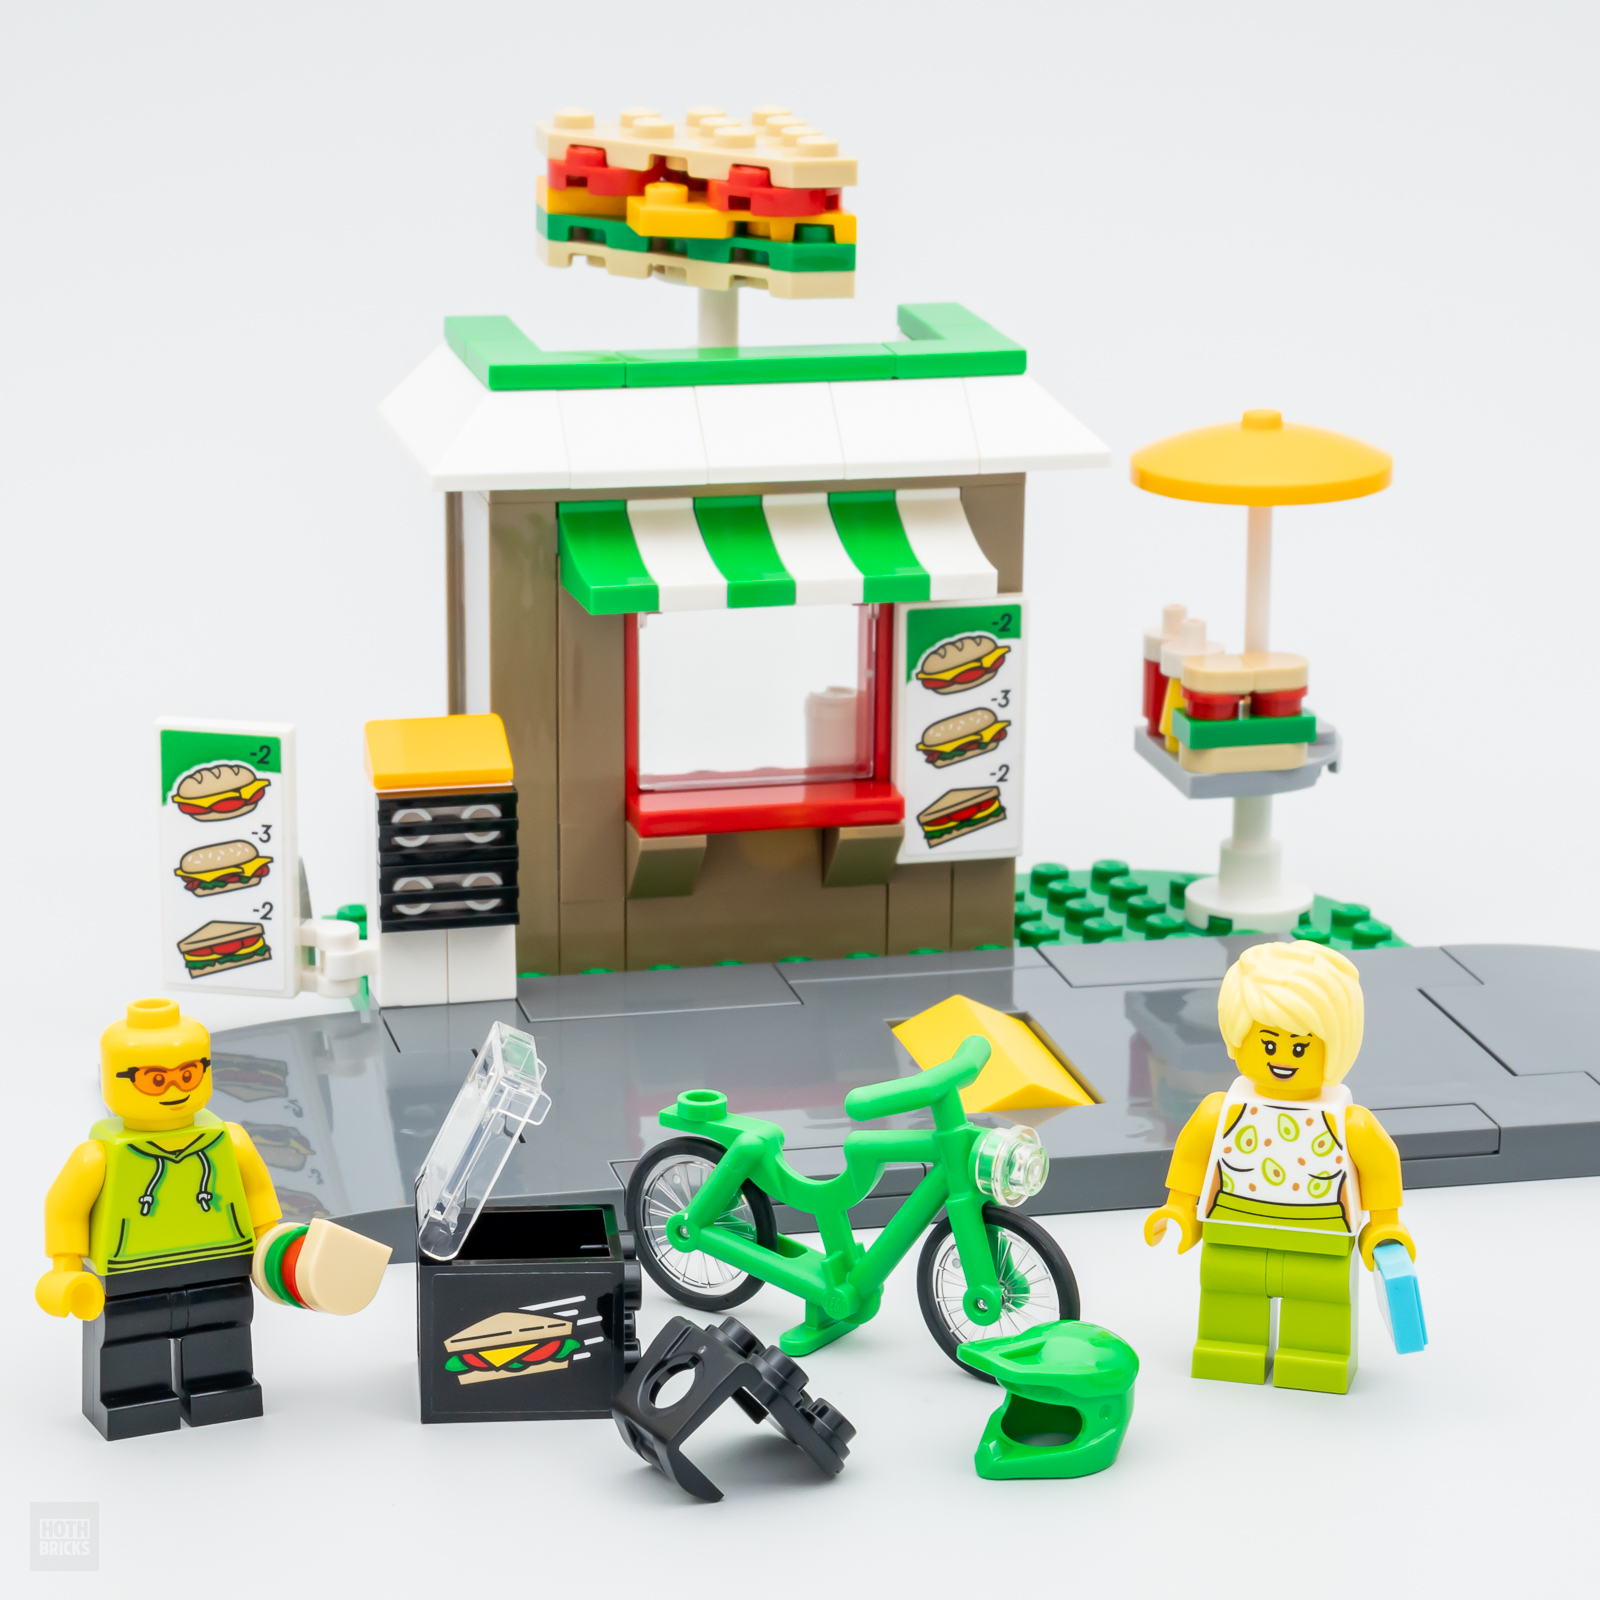 В магазине LEGO: набор LEGO CITY 40578 Sandwich Shop предоставляется бесплатно при покупке на сумму более 90 евро.